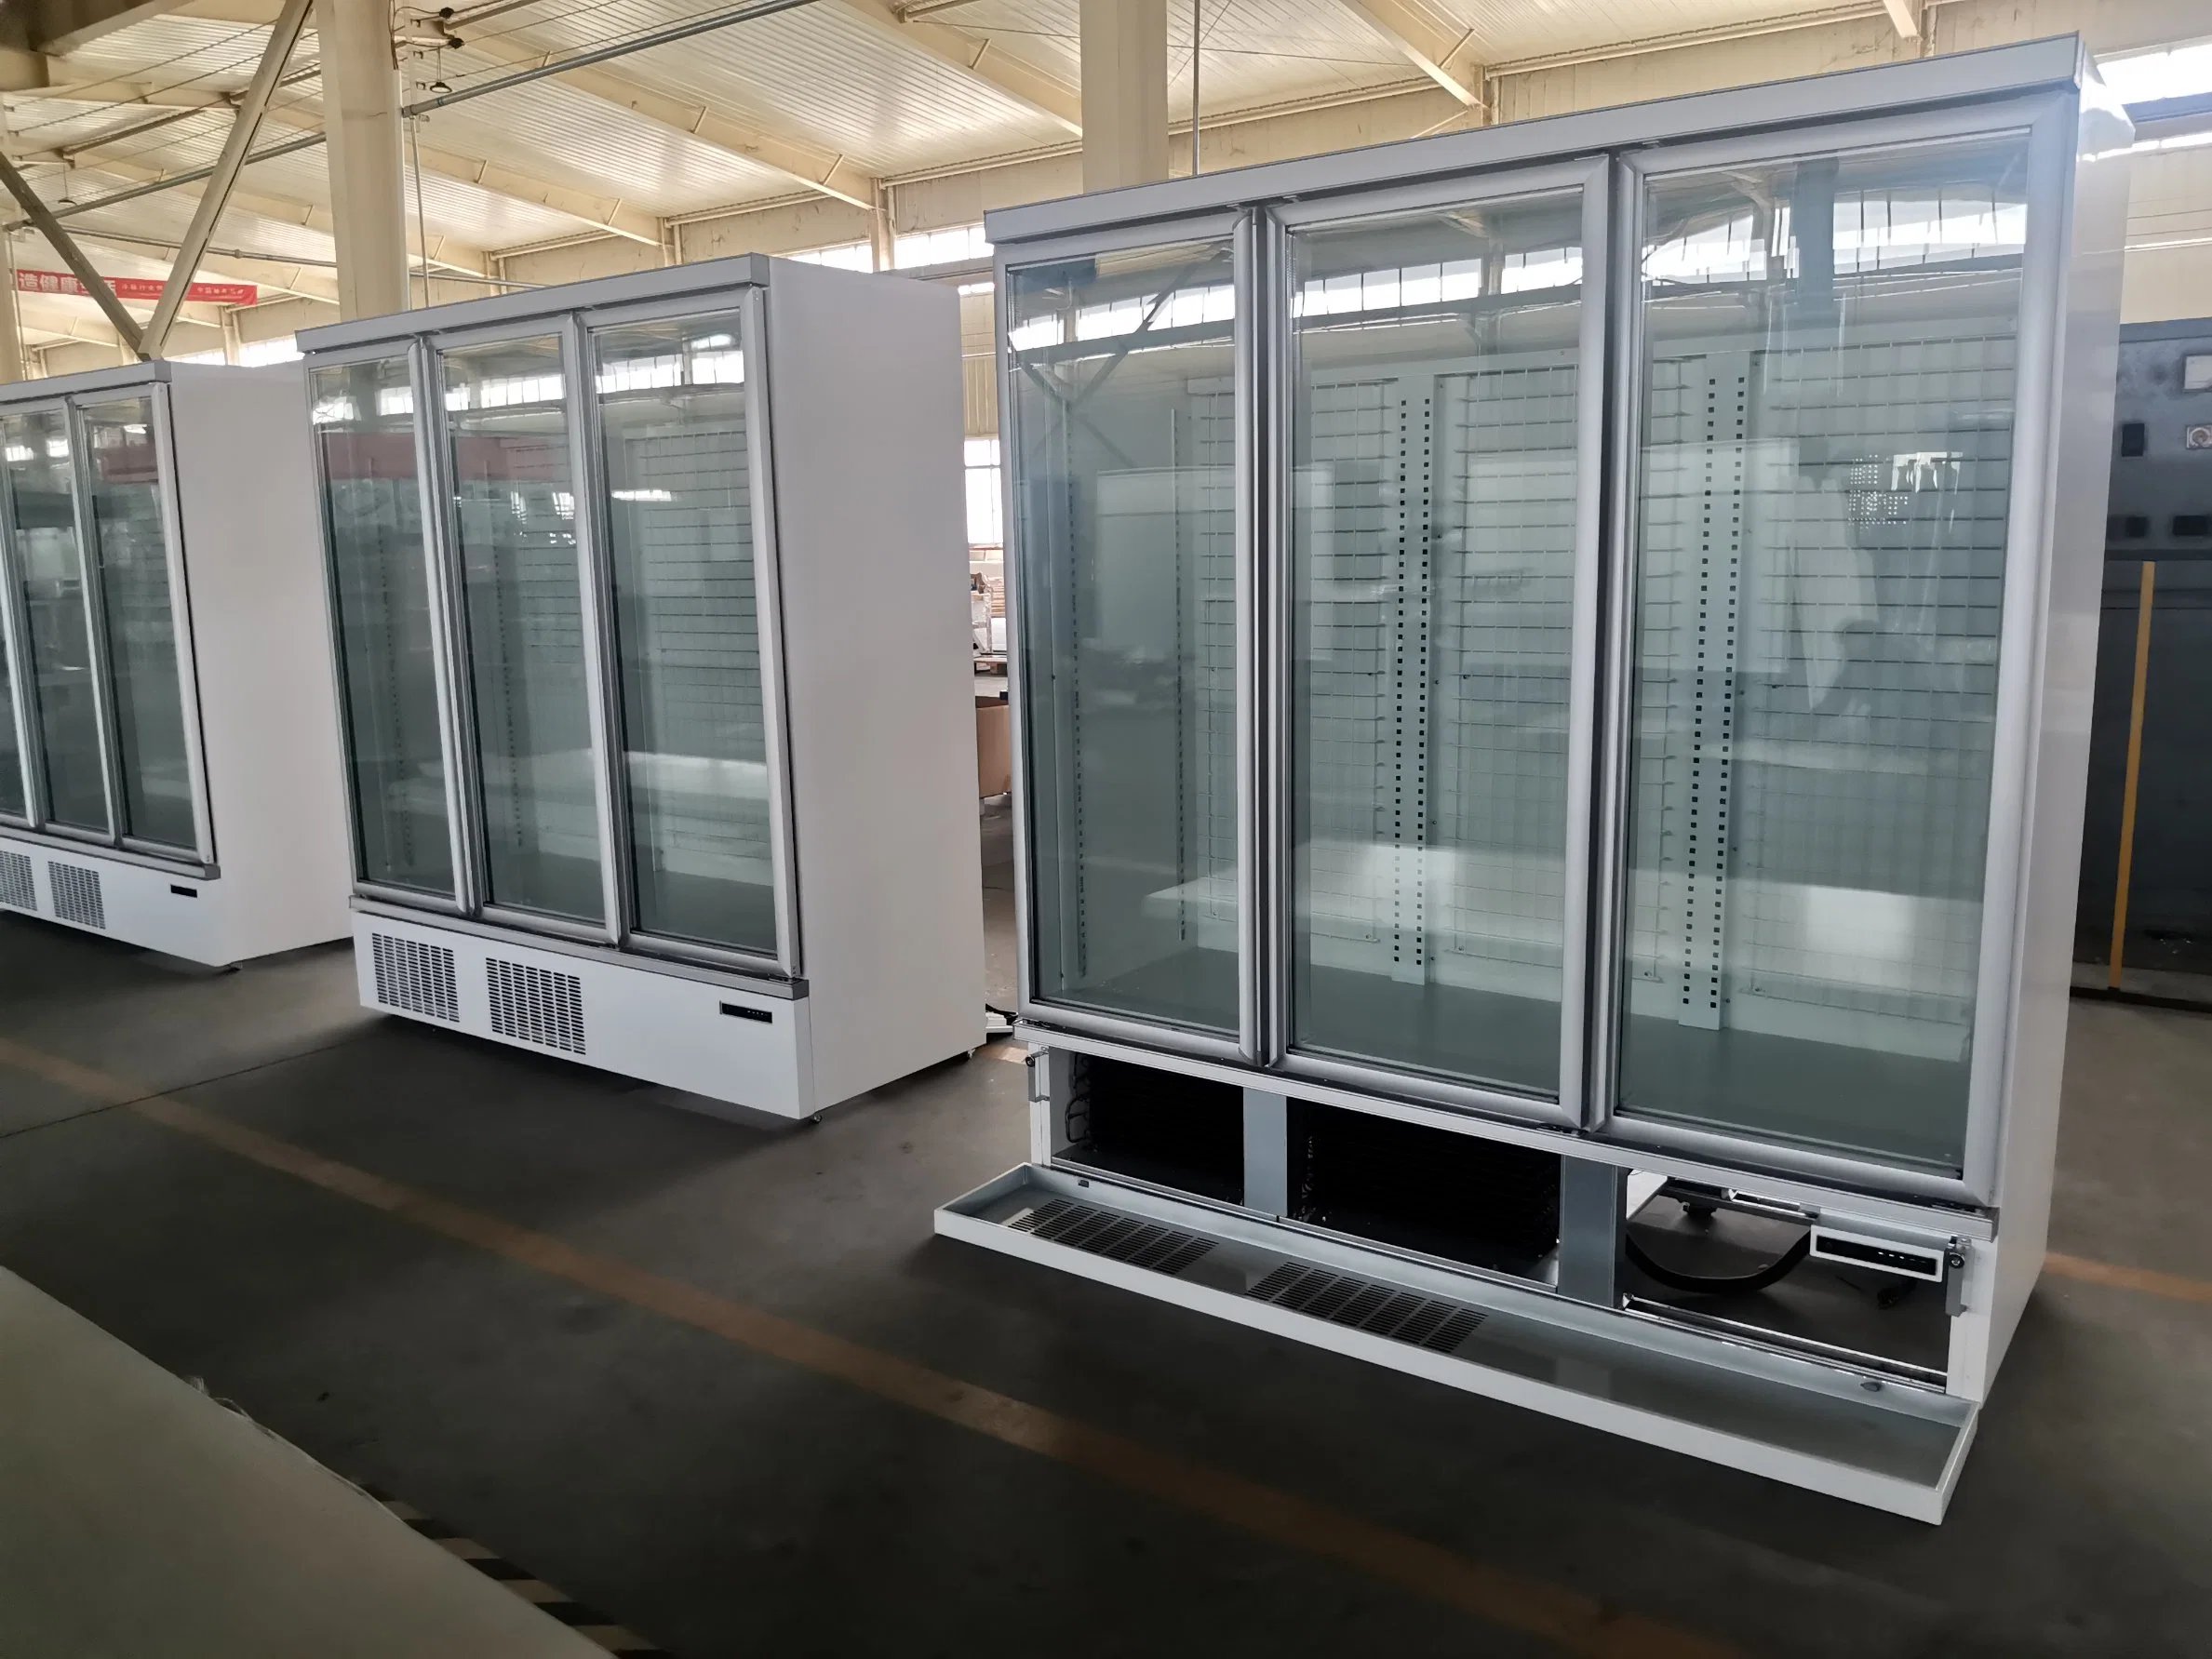 Vertical comercial Porta de vidro Sorvetes Exibir frigorífico congelador